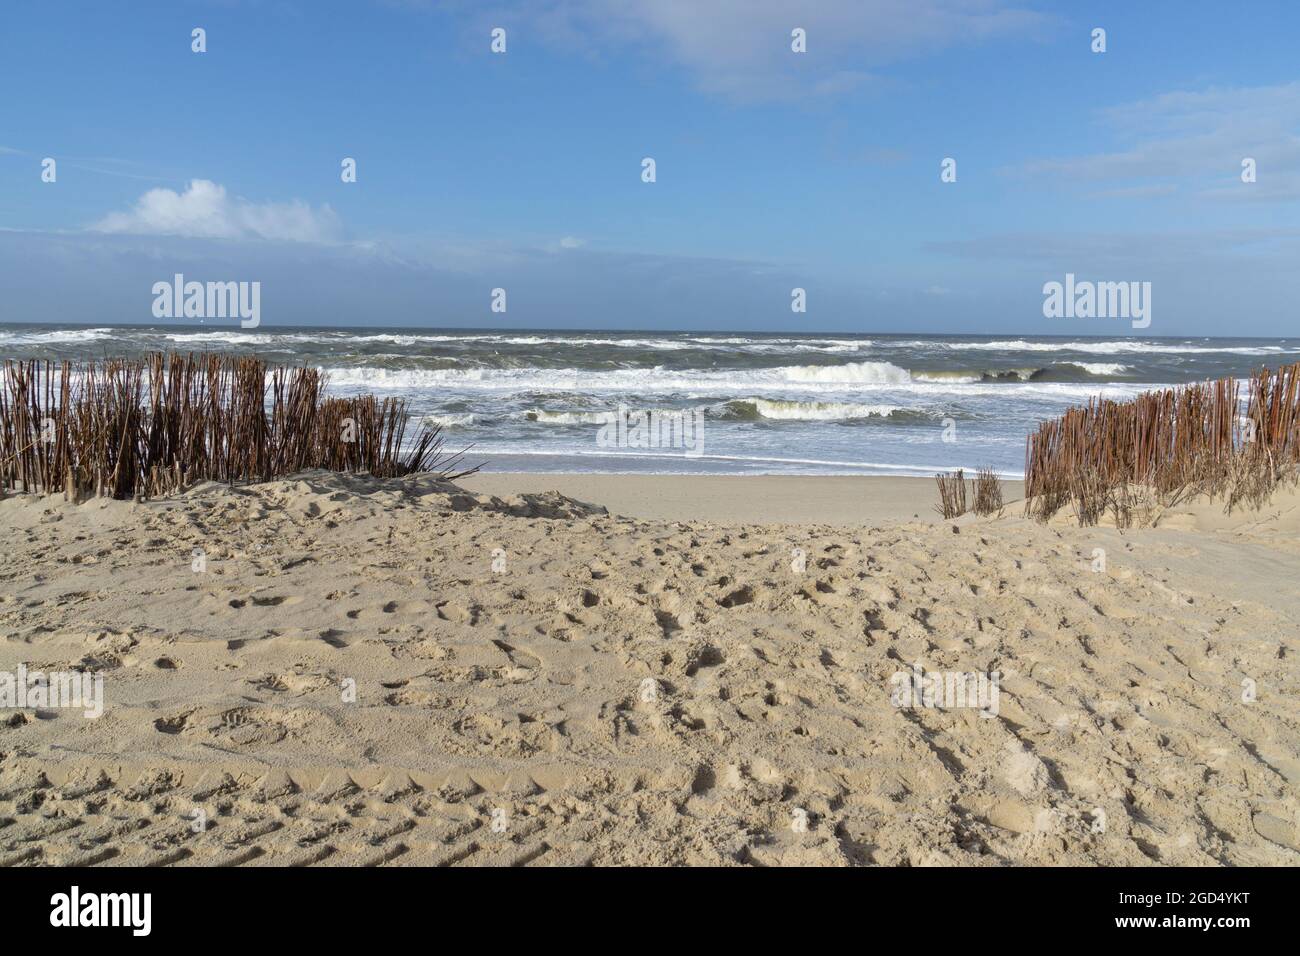 Géographie / voyage, Allemagne, Schleswig-Holstein, ile de Frise du Nord, Sylt, Westerland, plage de sable, DROITS-SUPPLÉMENTAIRES-AUTORISATION-INFO-NON-DISPONIBLE Banque D'Images